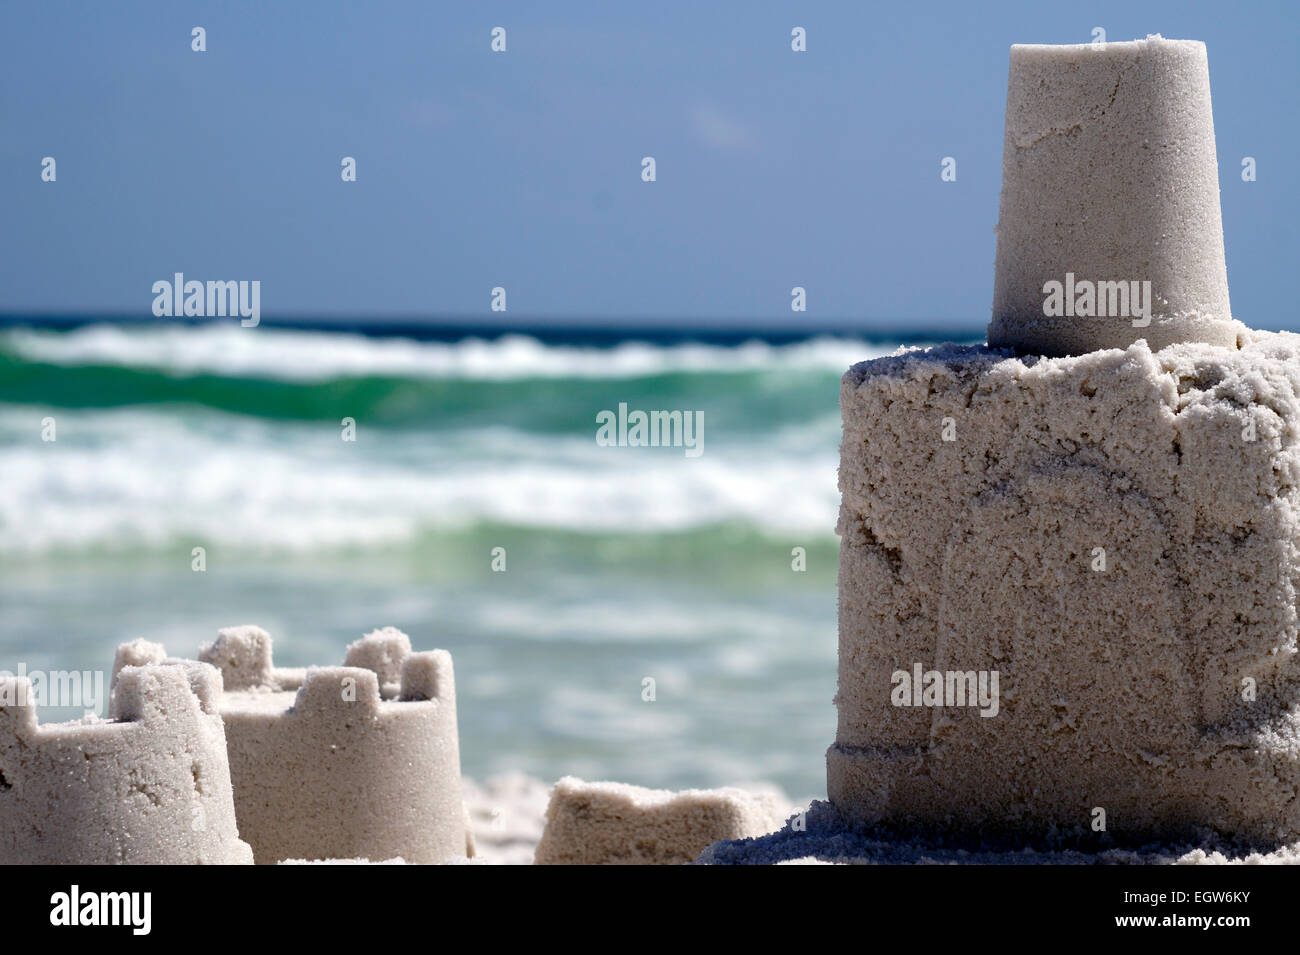 A sandcastle on Okaloosa Beach. Stock Photo